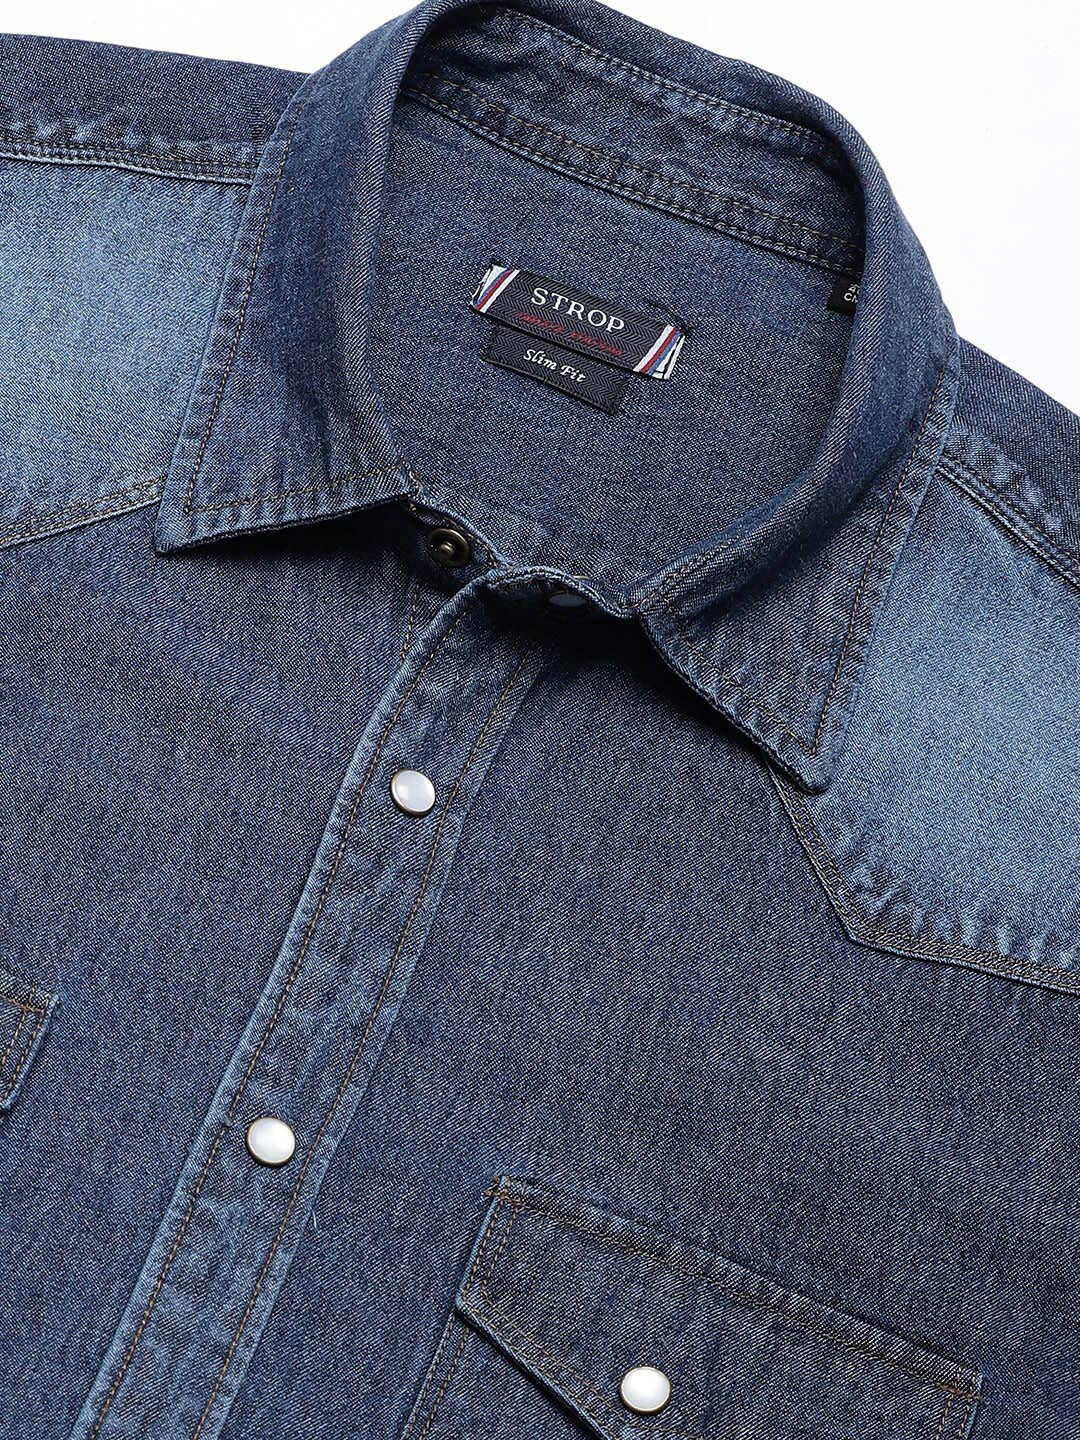 Men's Shirt Button Up Shirt Casual Shirt Jeans Shirt Denim Shirt Denim Blue  Light Grey Dark